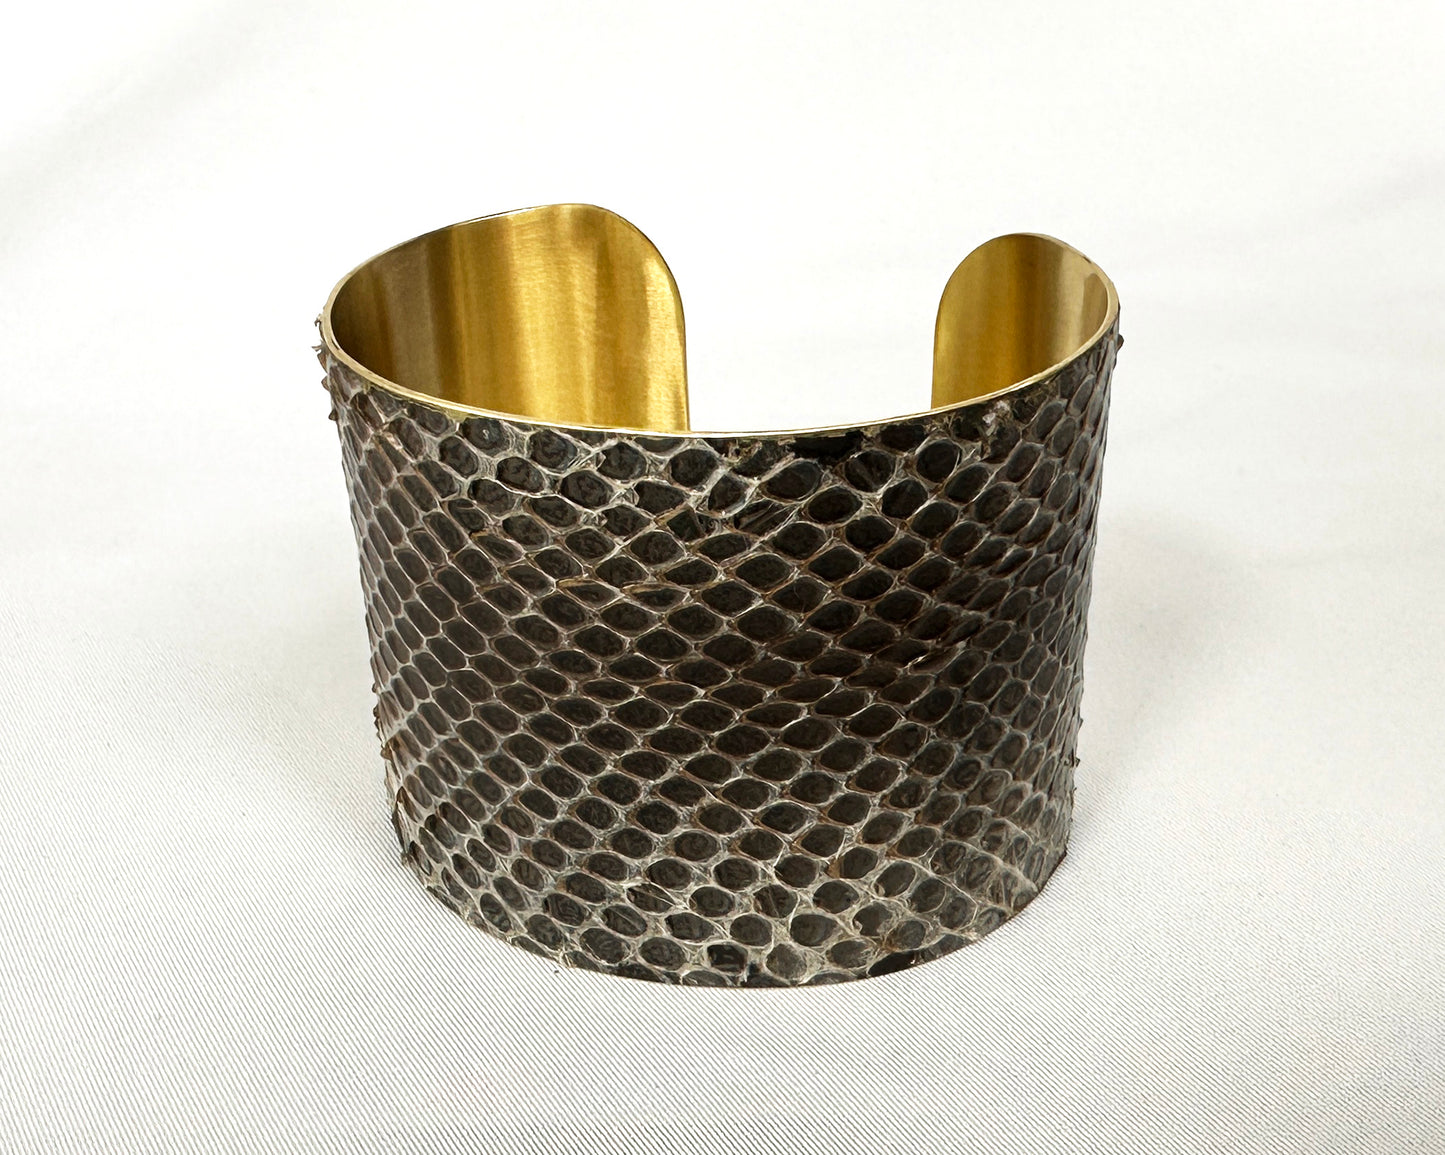 2" Antiqued Brass Snake Shed Cuff Bracelet (Mexican Black Kingsnake)